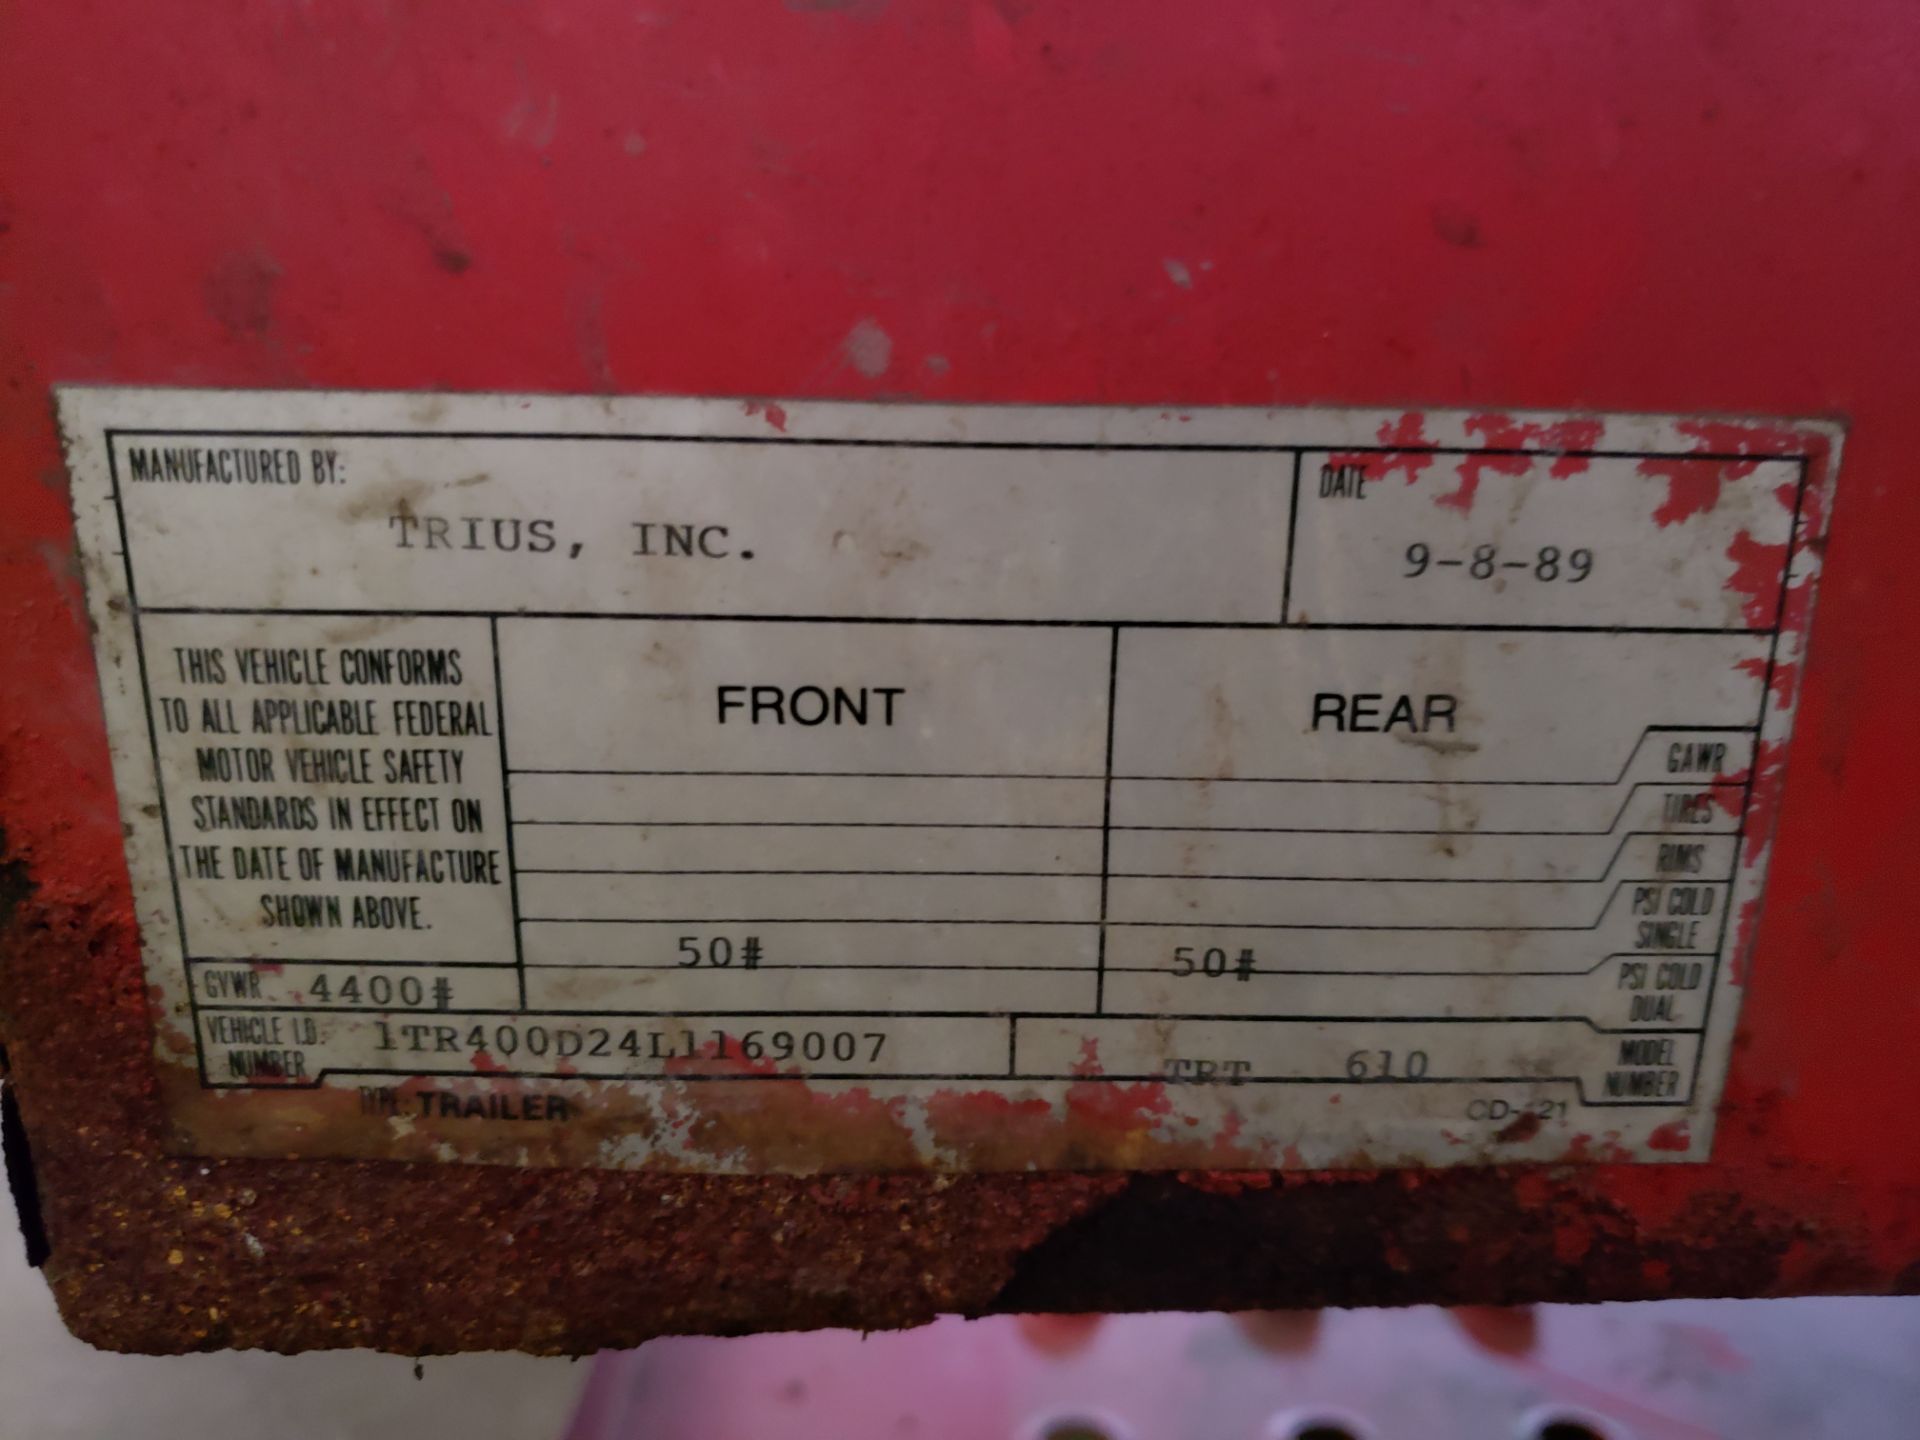 1989 TRIUS INC CAR HAULER COLLAPSABLE TONGUE GVWR-4400 LBS. VIN#1TR400D24L1169007 - Image 3 of 3